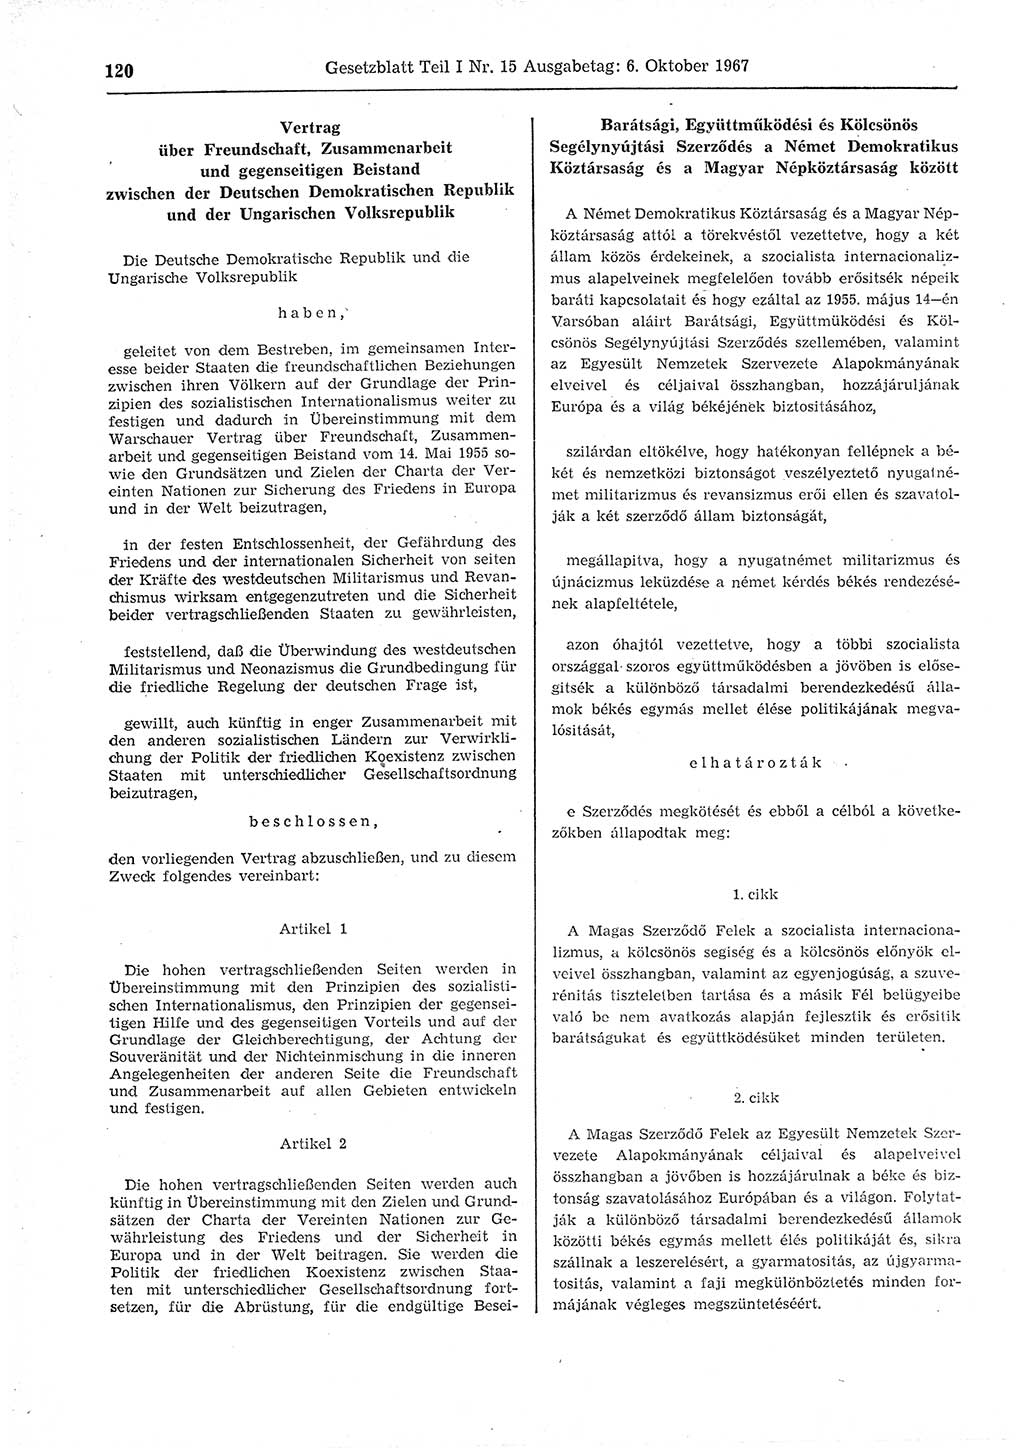 Gesetzblatt (GBl.) der Deutschen Demokratischen Republik (DDR) Teil Ⅰ 1967, Seite 120 (GBl. DDR Ⅰ 1967, S. 120)